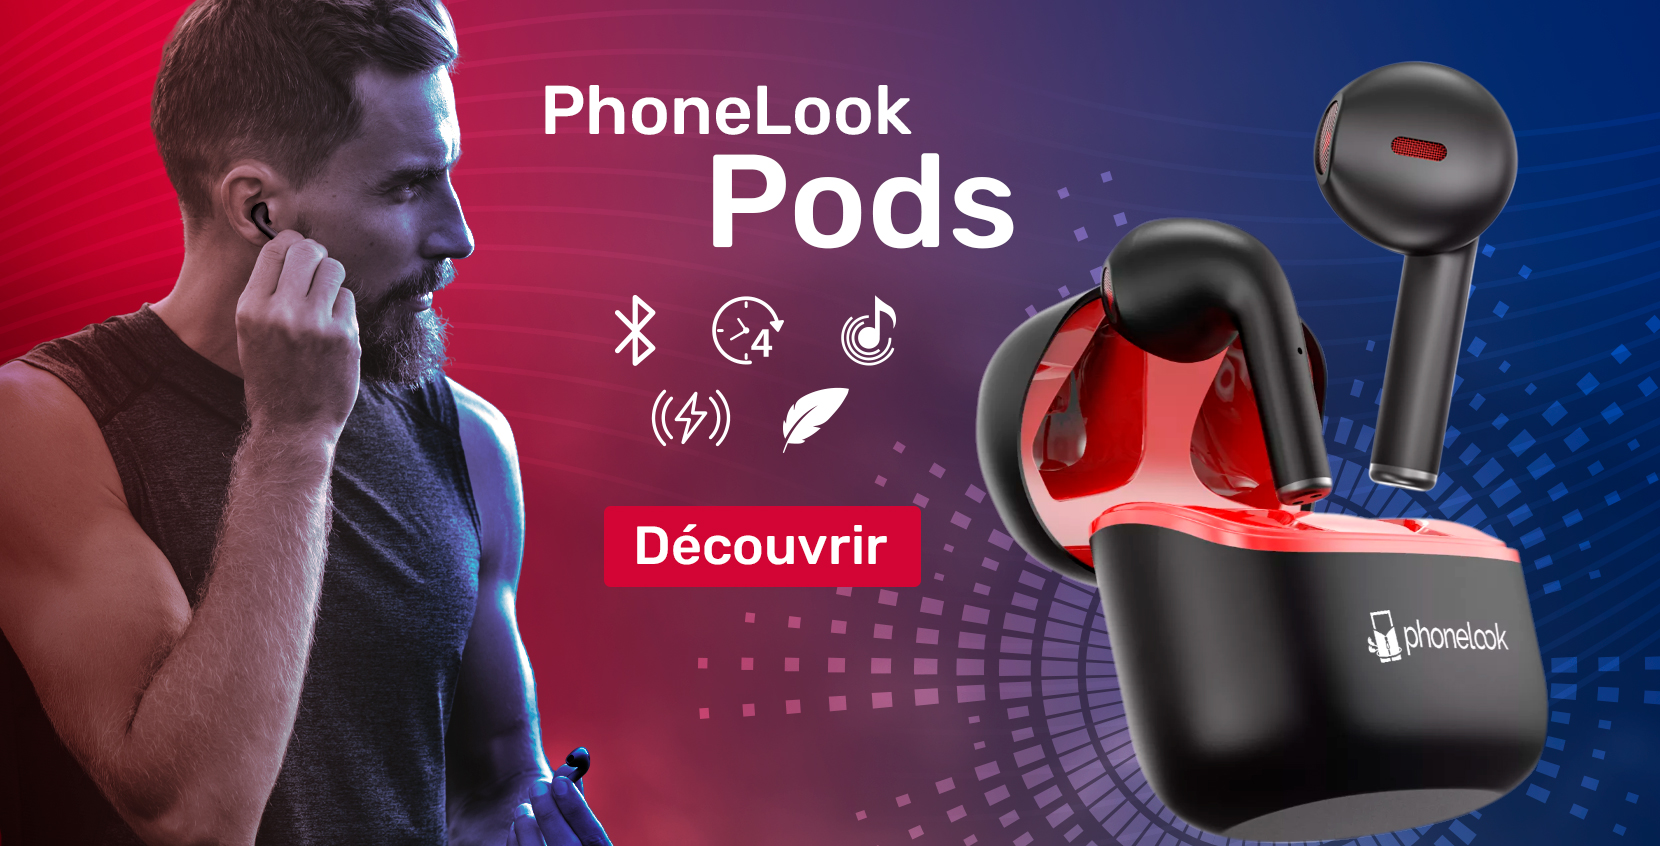 PhoneLook Pods